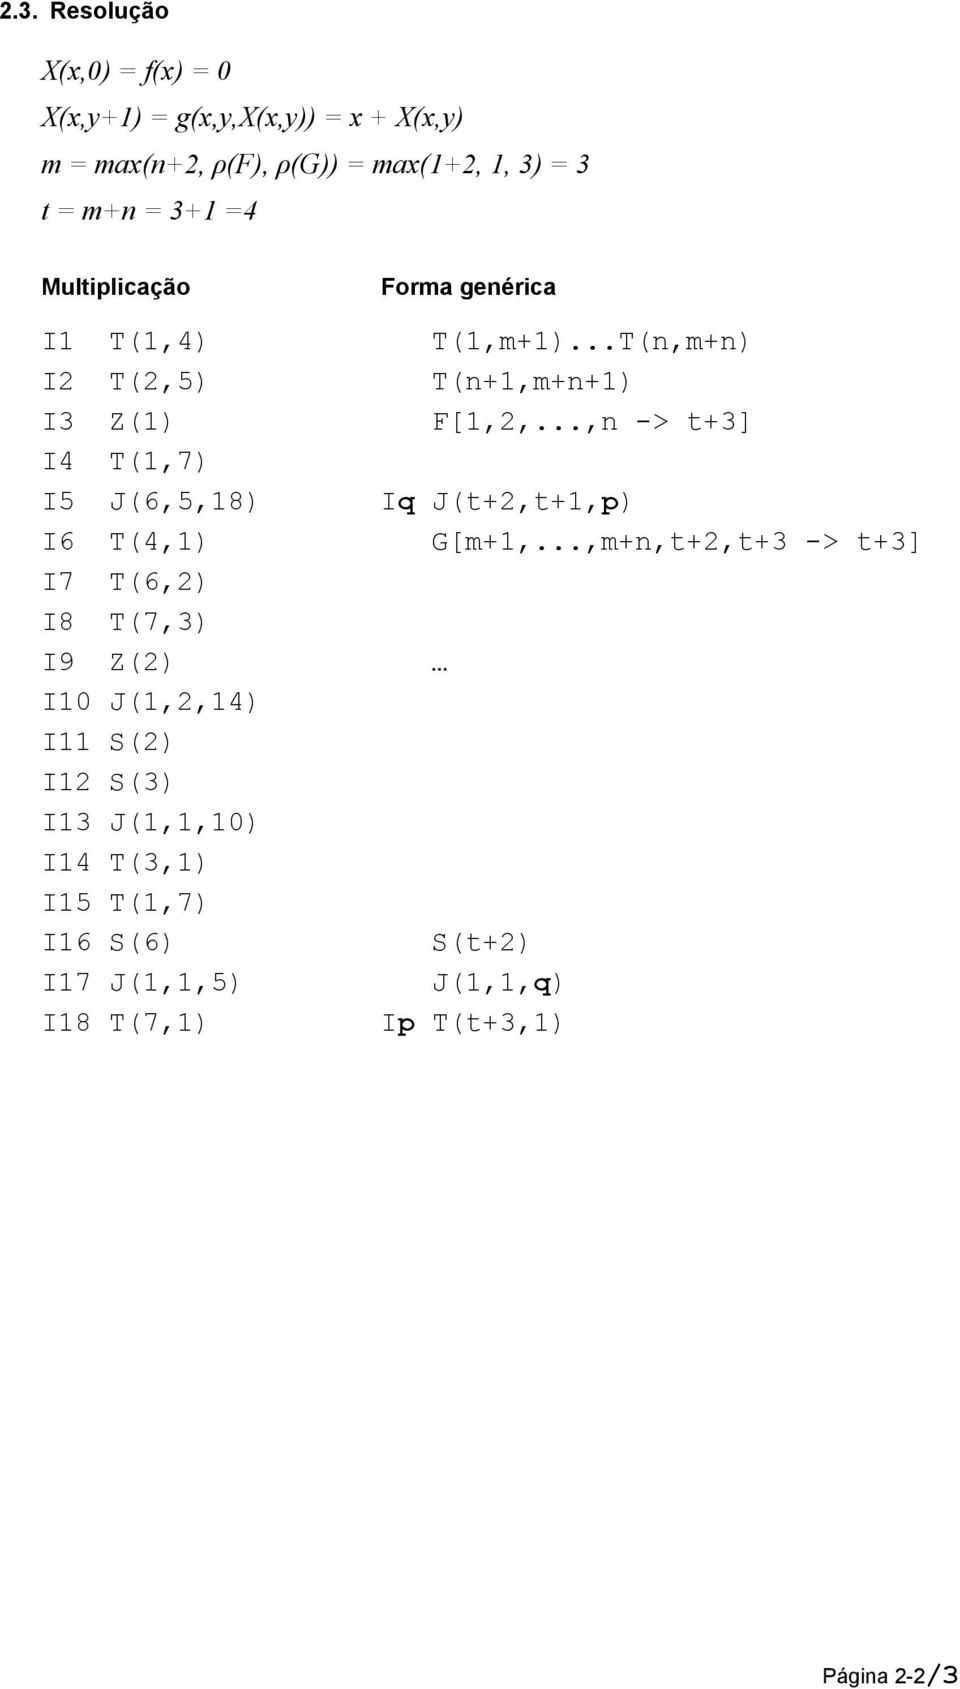 J(1,2,14) I11 S(2) I12 S(3) I13 J(1,1,10) I14 T(3,1) I15 T(1,7) I16 S(6) I17 J(1,1,5) I18 T(7,1) Forma genérica T(1,m+1).